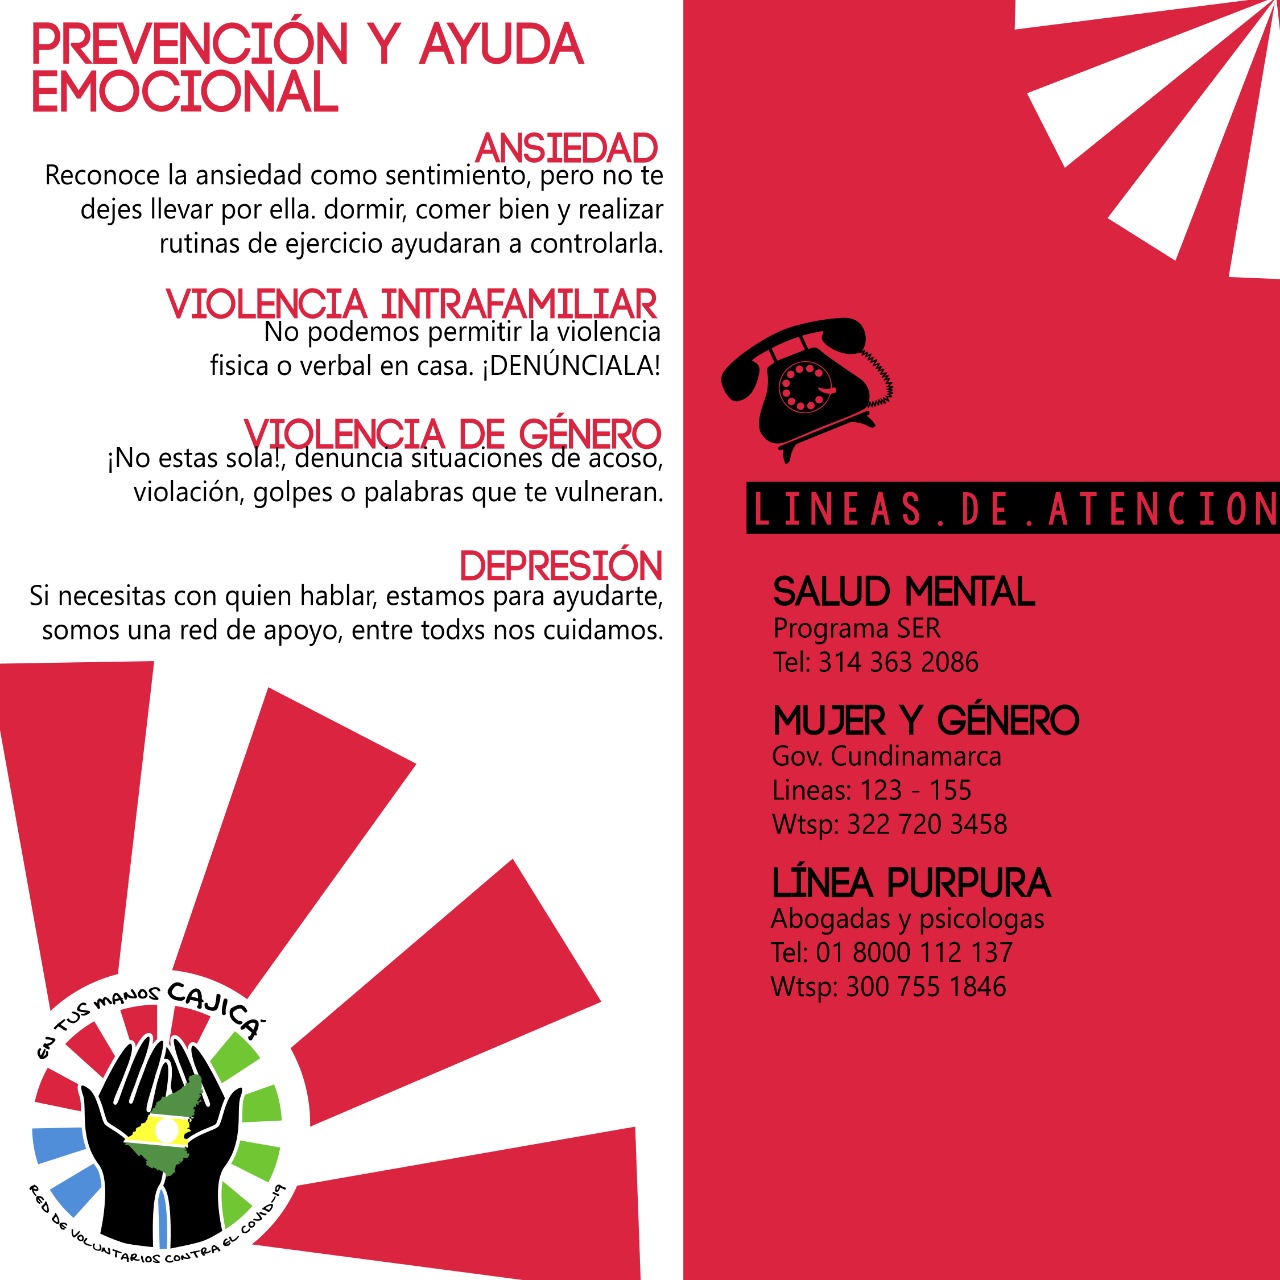 Donaciones en Cajicá para ayudar a las familias vulnerables